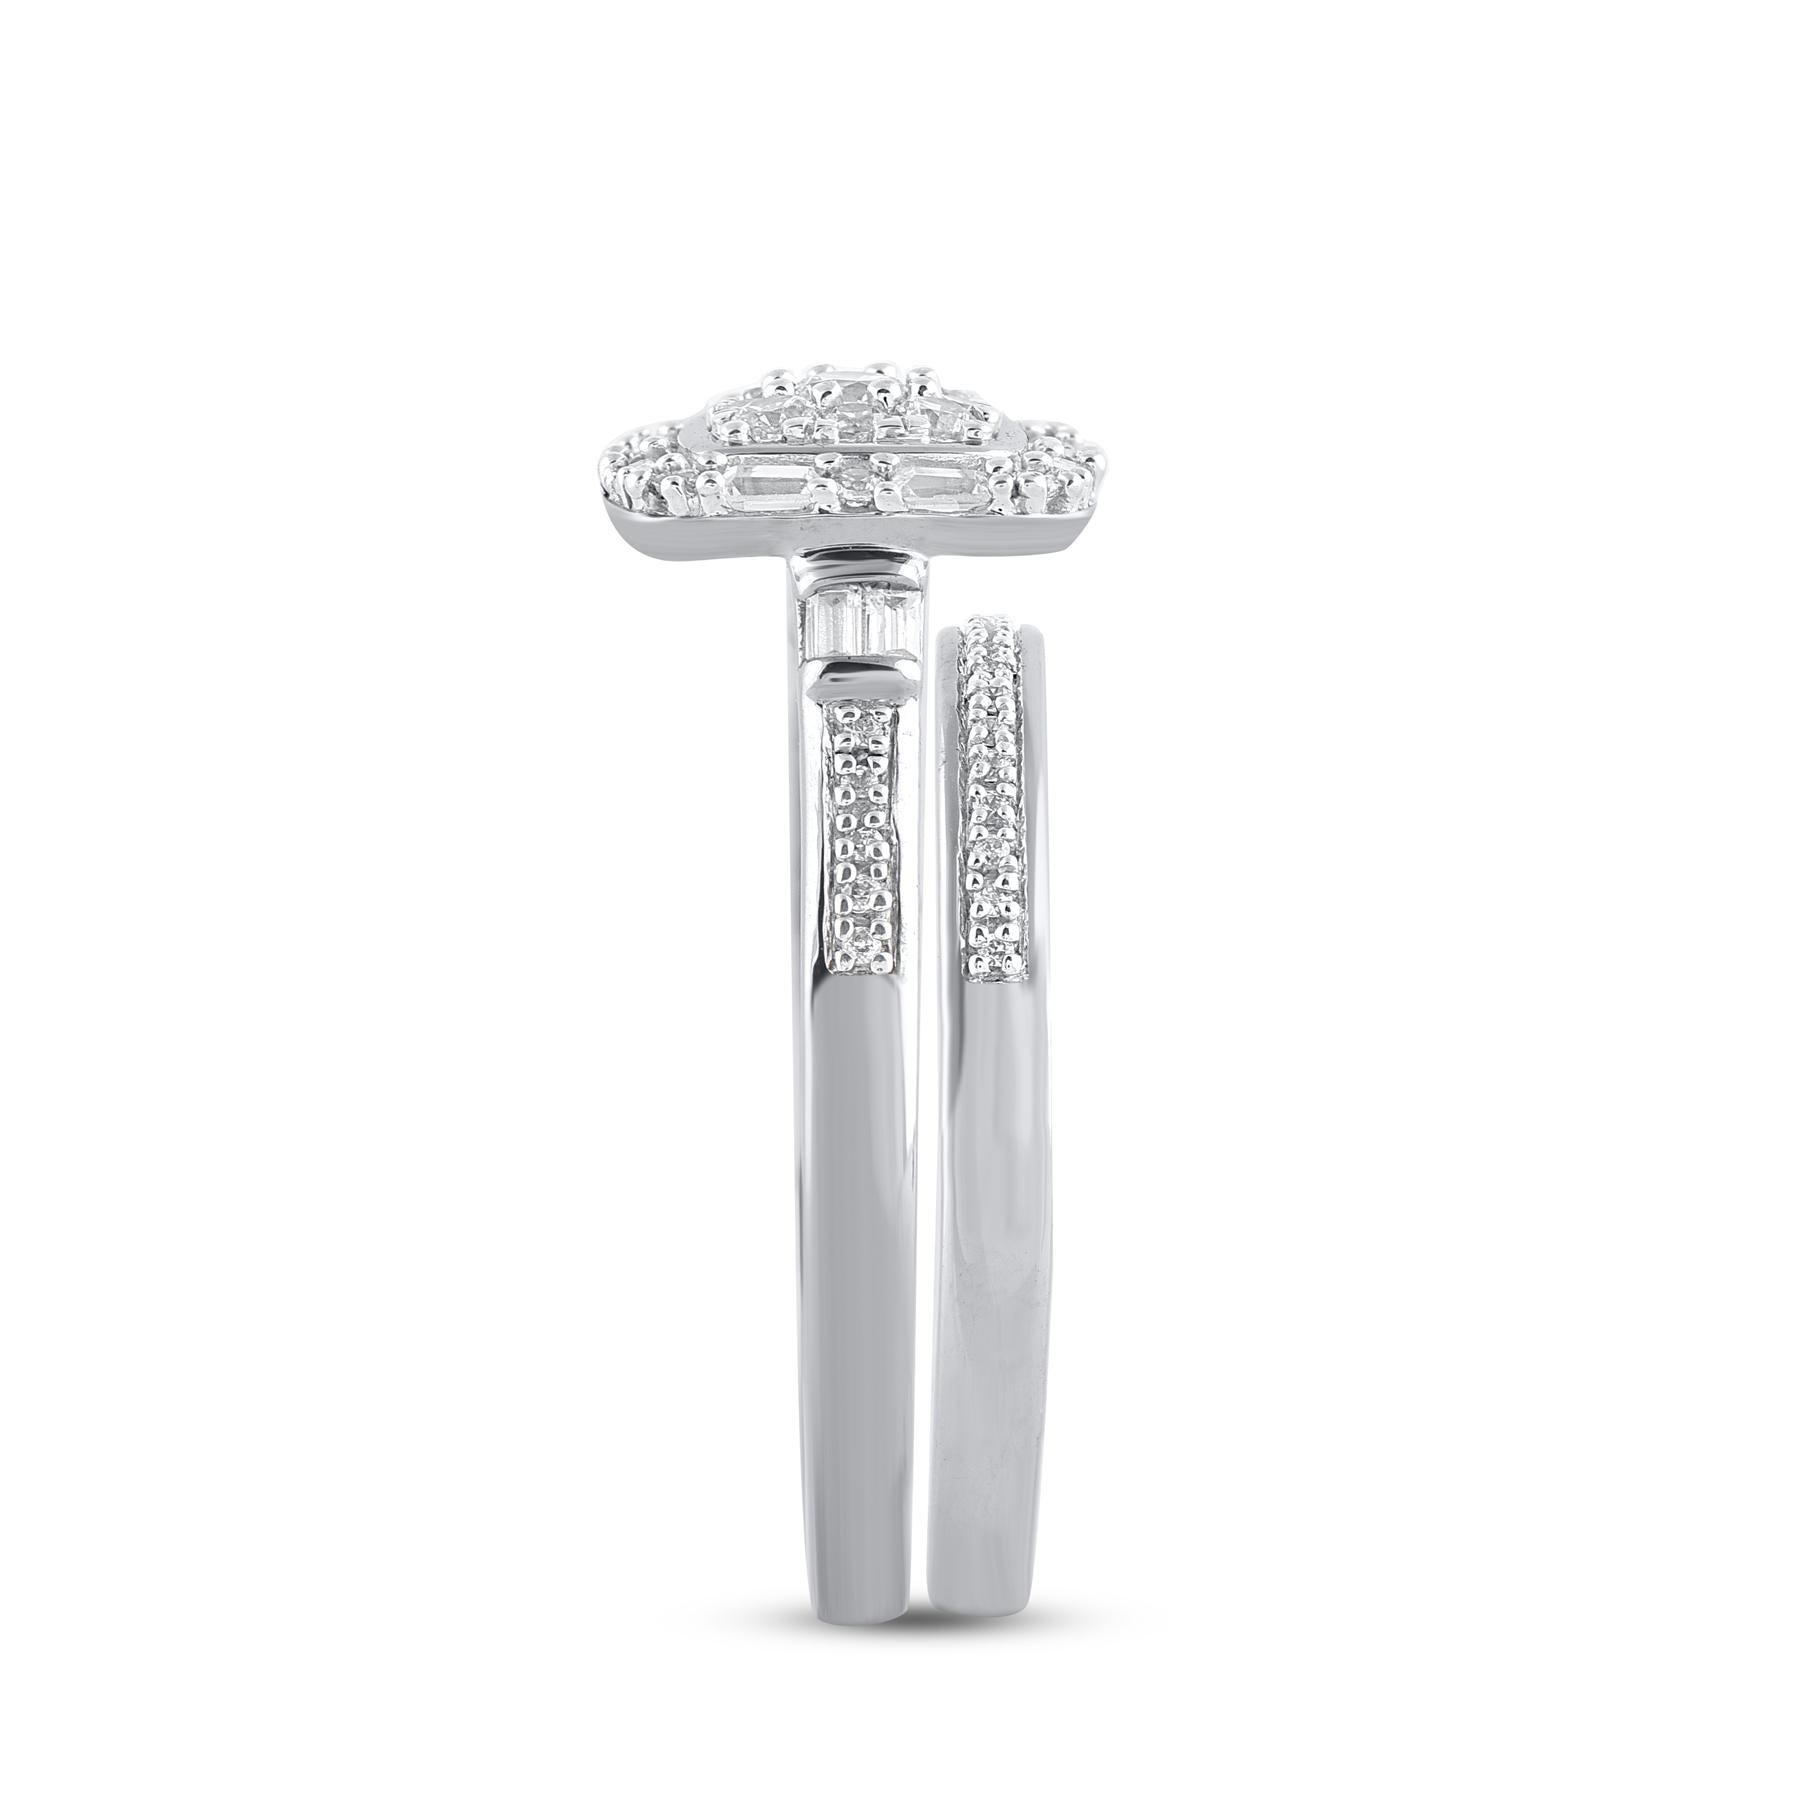 Mixed Cut TJD 0.50 Carat Natural Round Diamond 14 Karat White Gold Bridal Ring Set For Sale